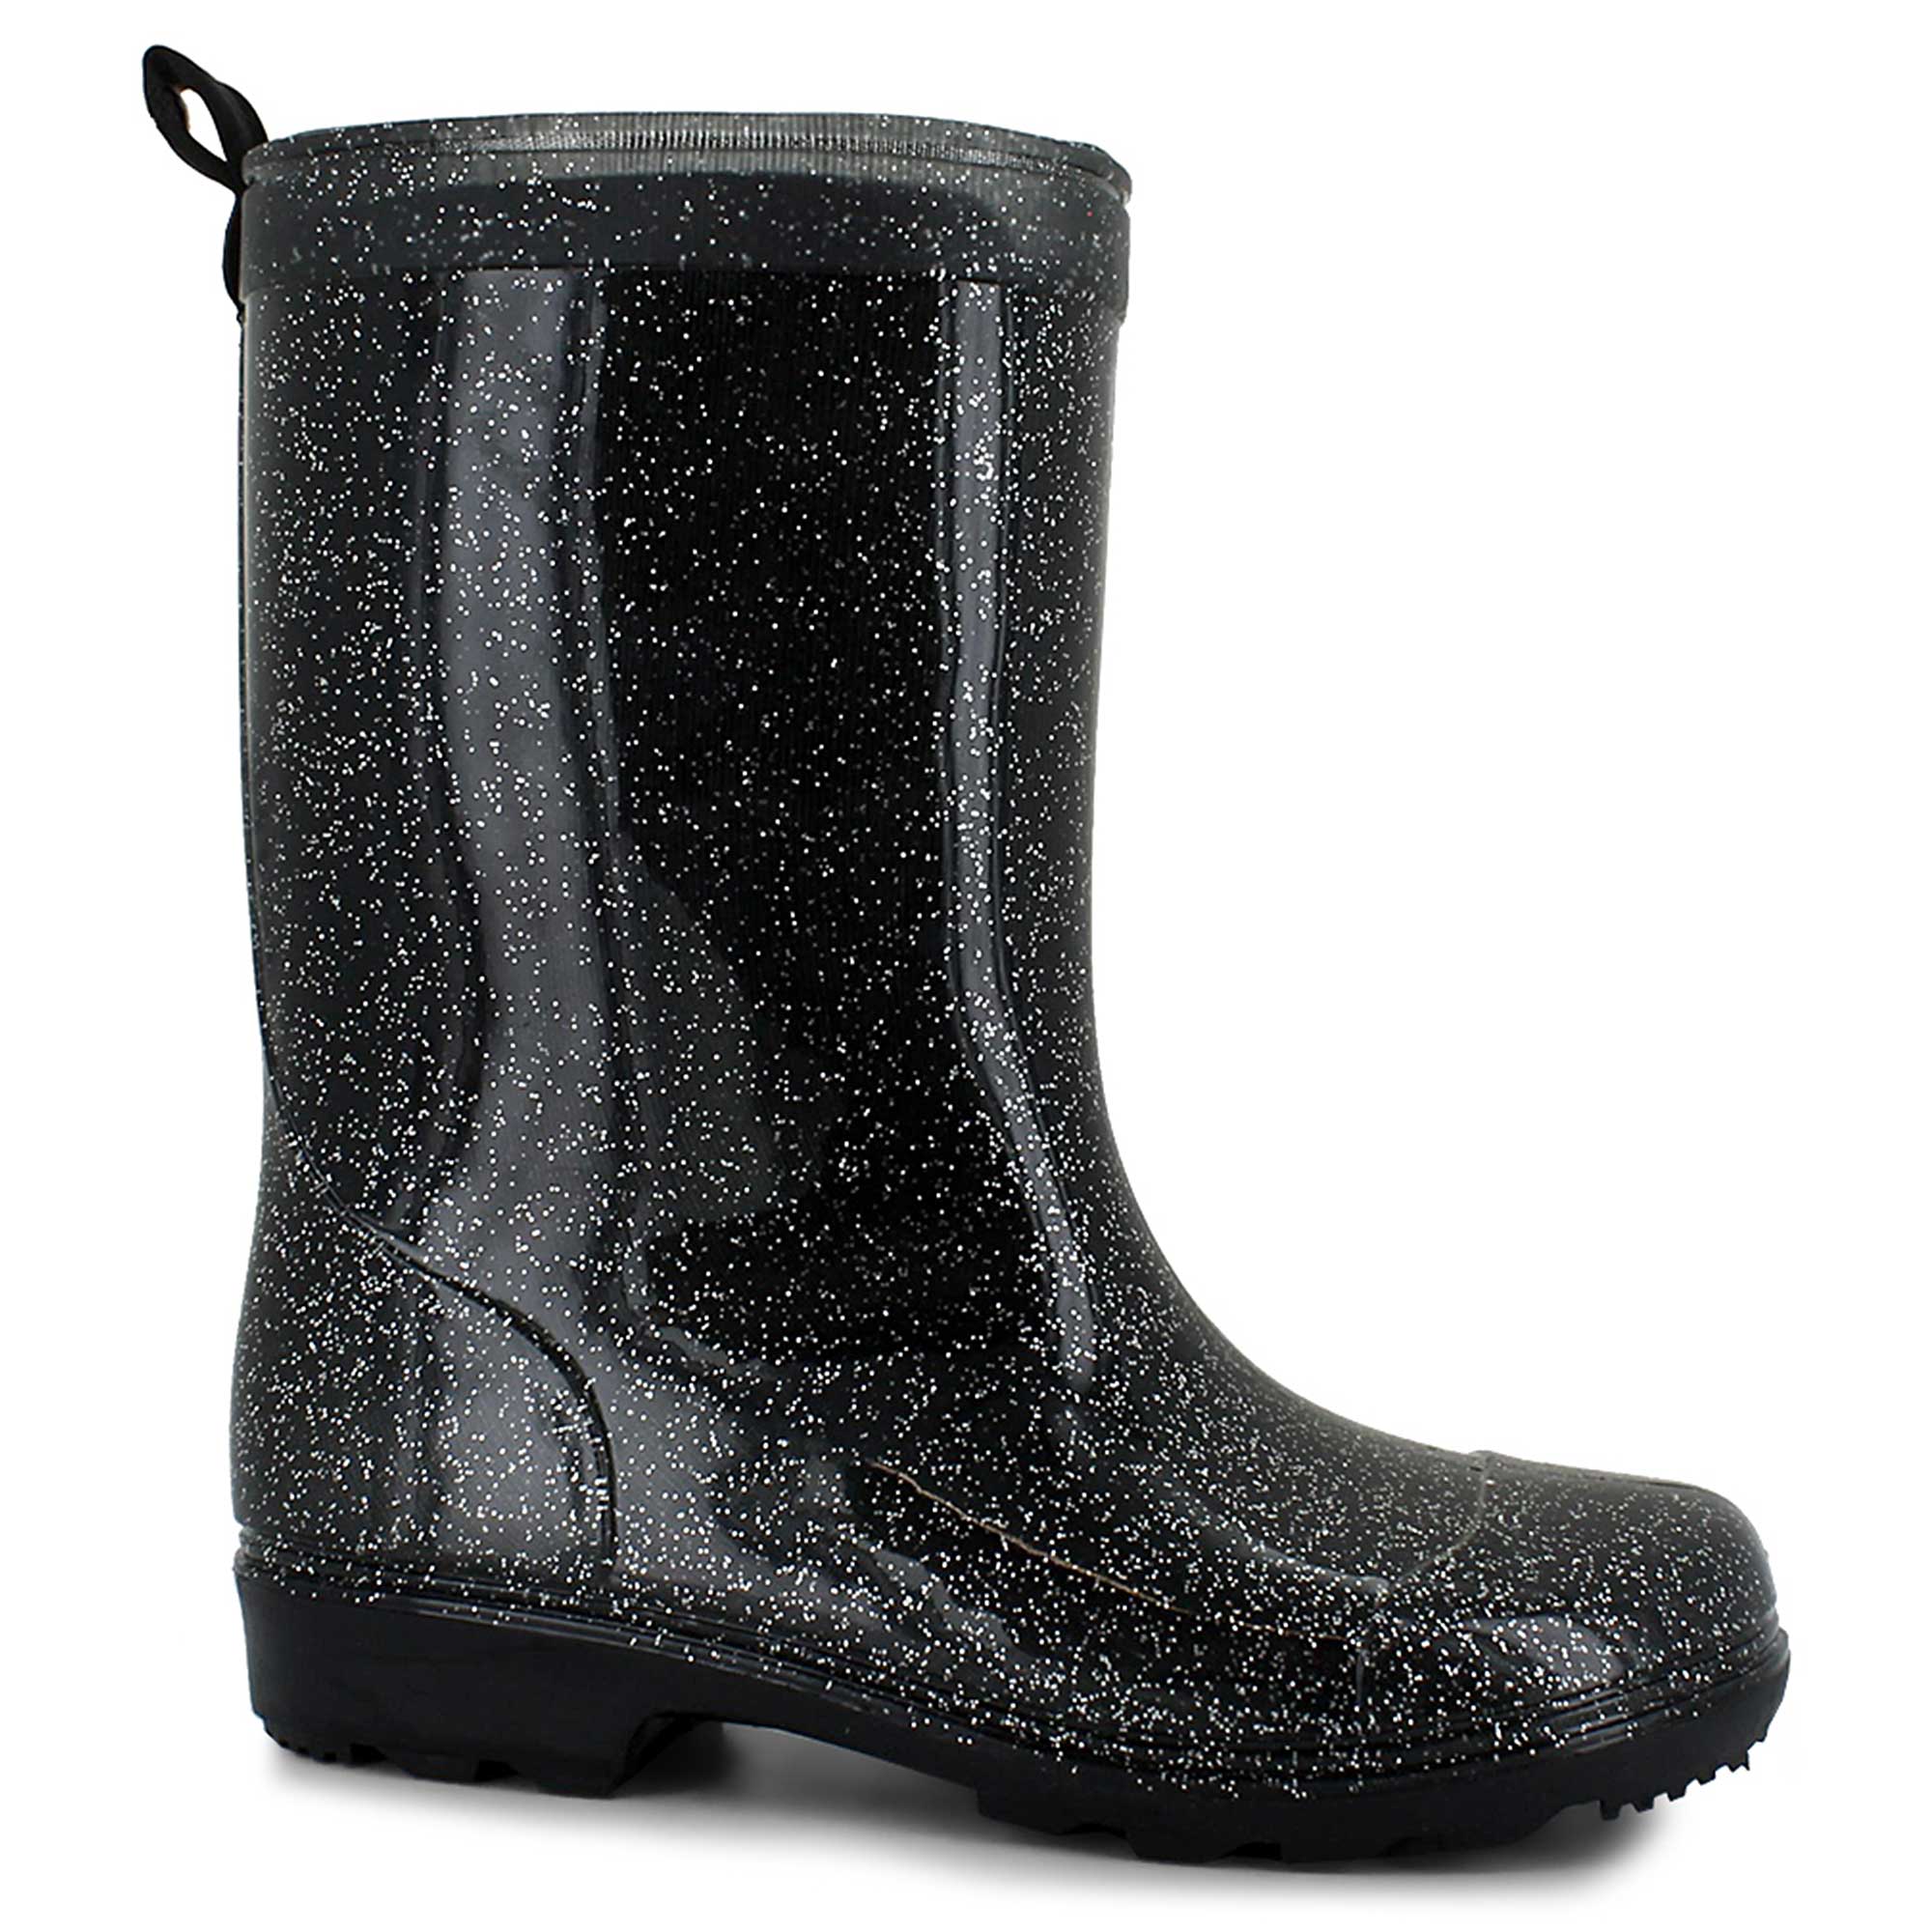 shoe dept rain boots